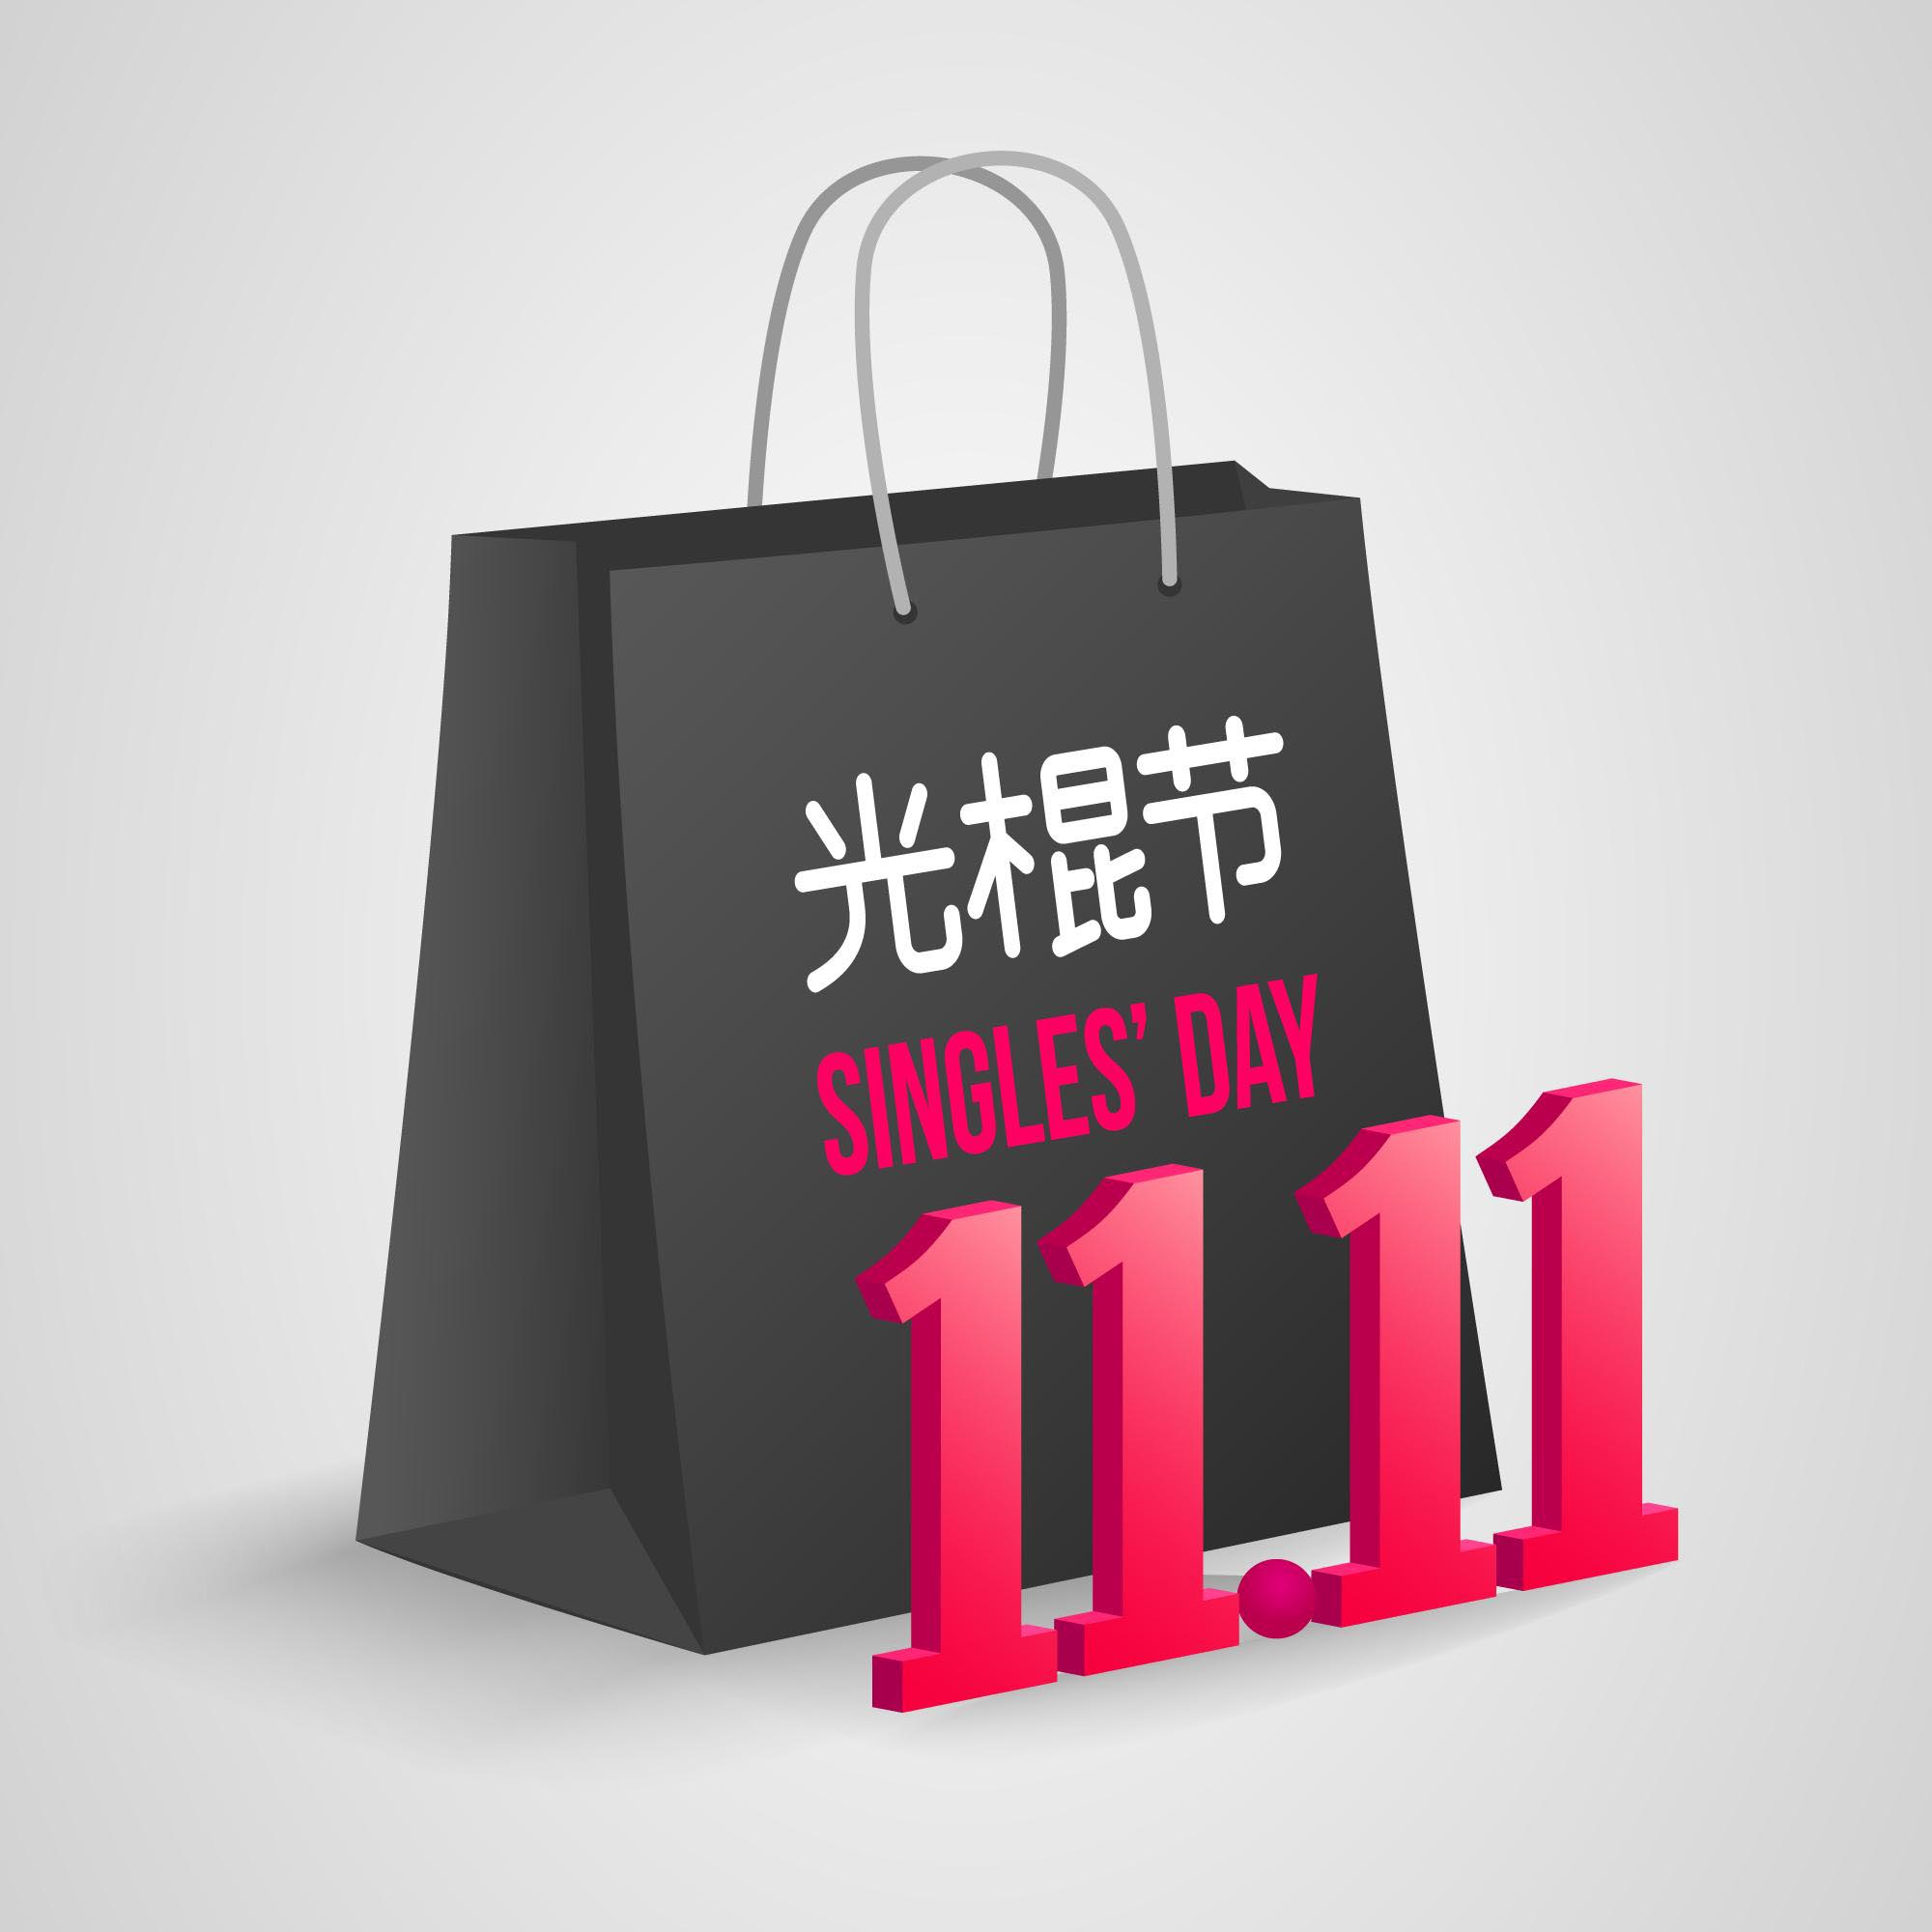 双十一11.11设计光棍节/购物节活动矢量源文件realistic-design-singles-day-event